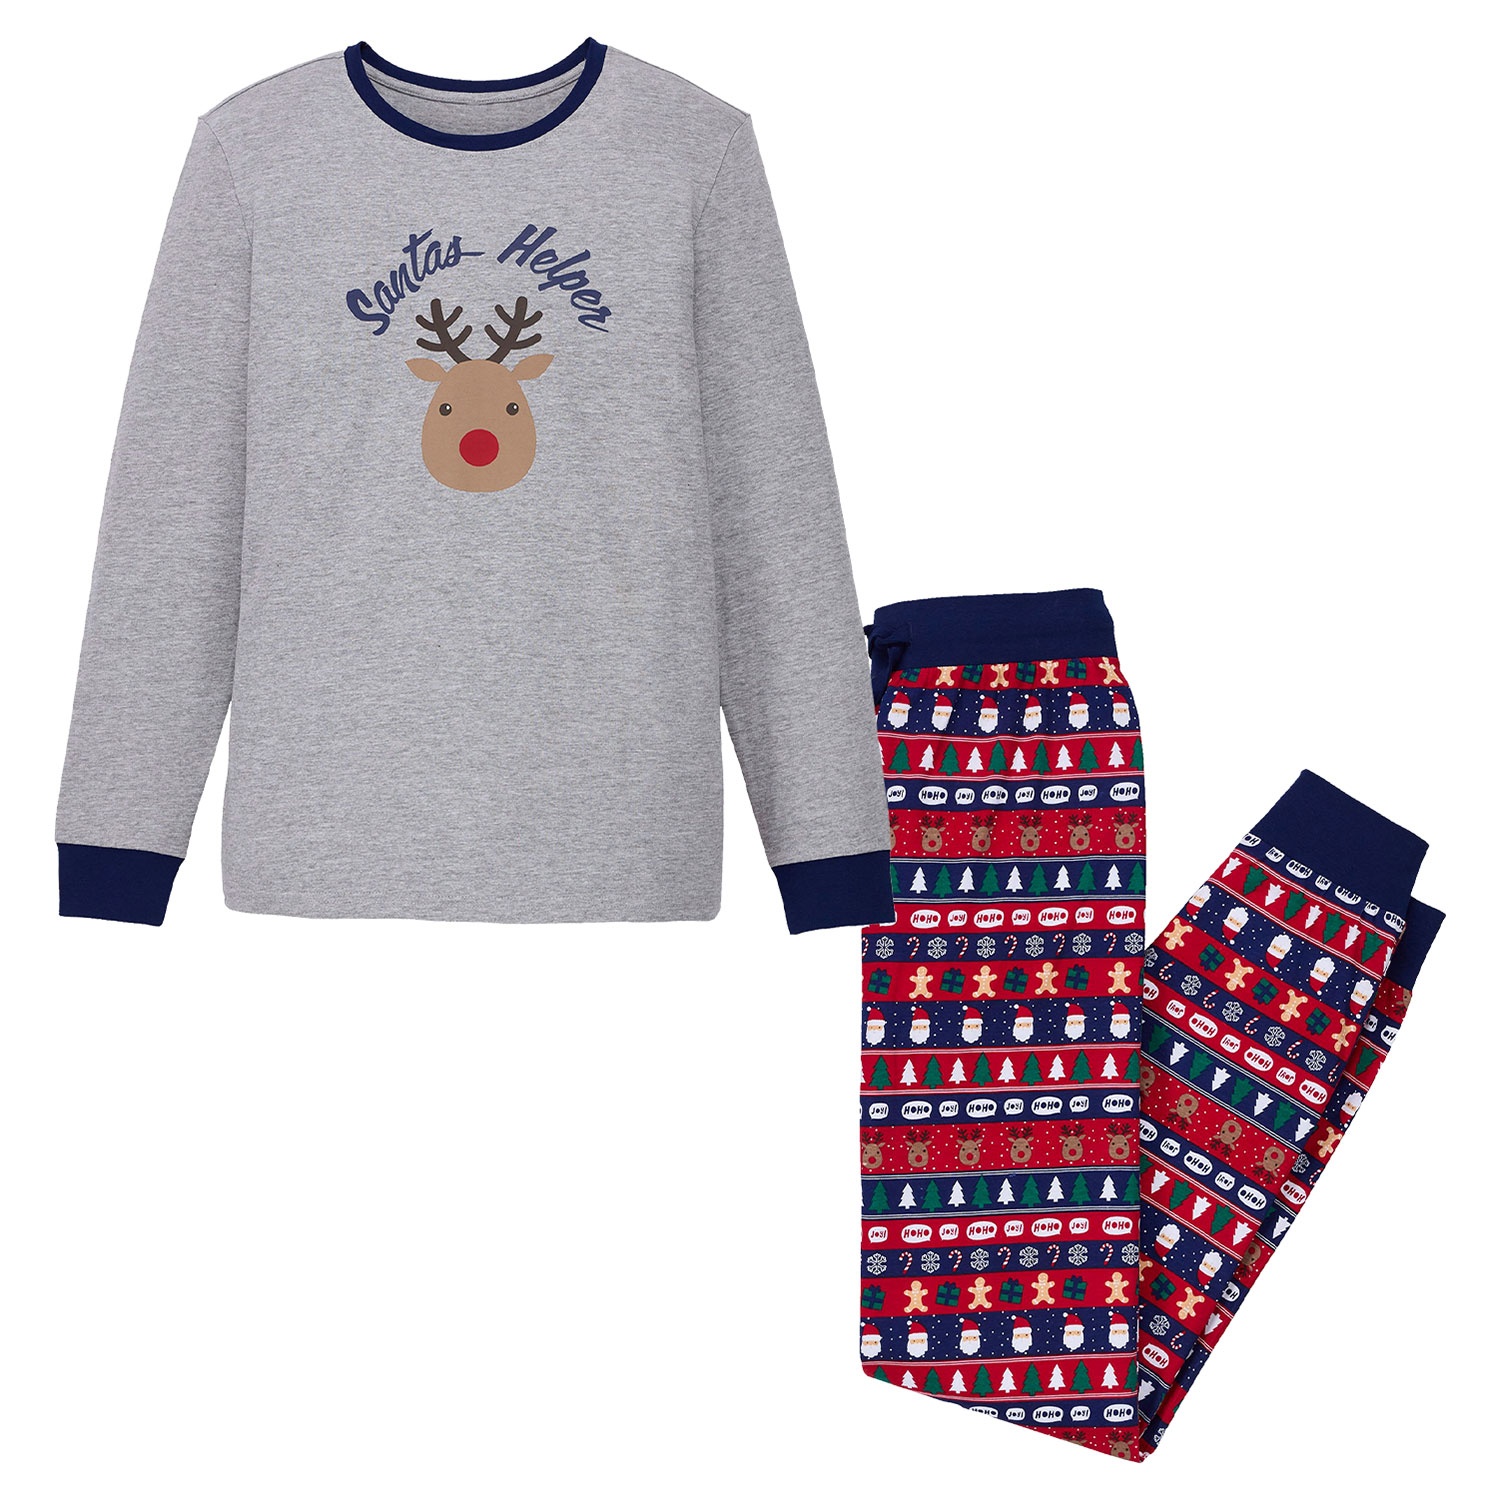 WATSON´S/BLUE MOTION Damen und Herren Weihnachts-Pyjama